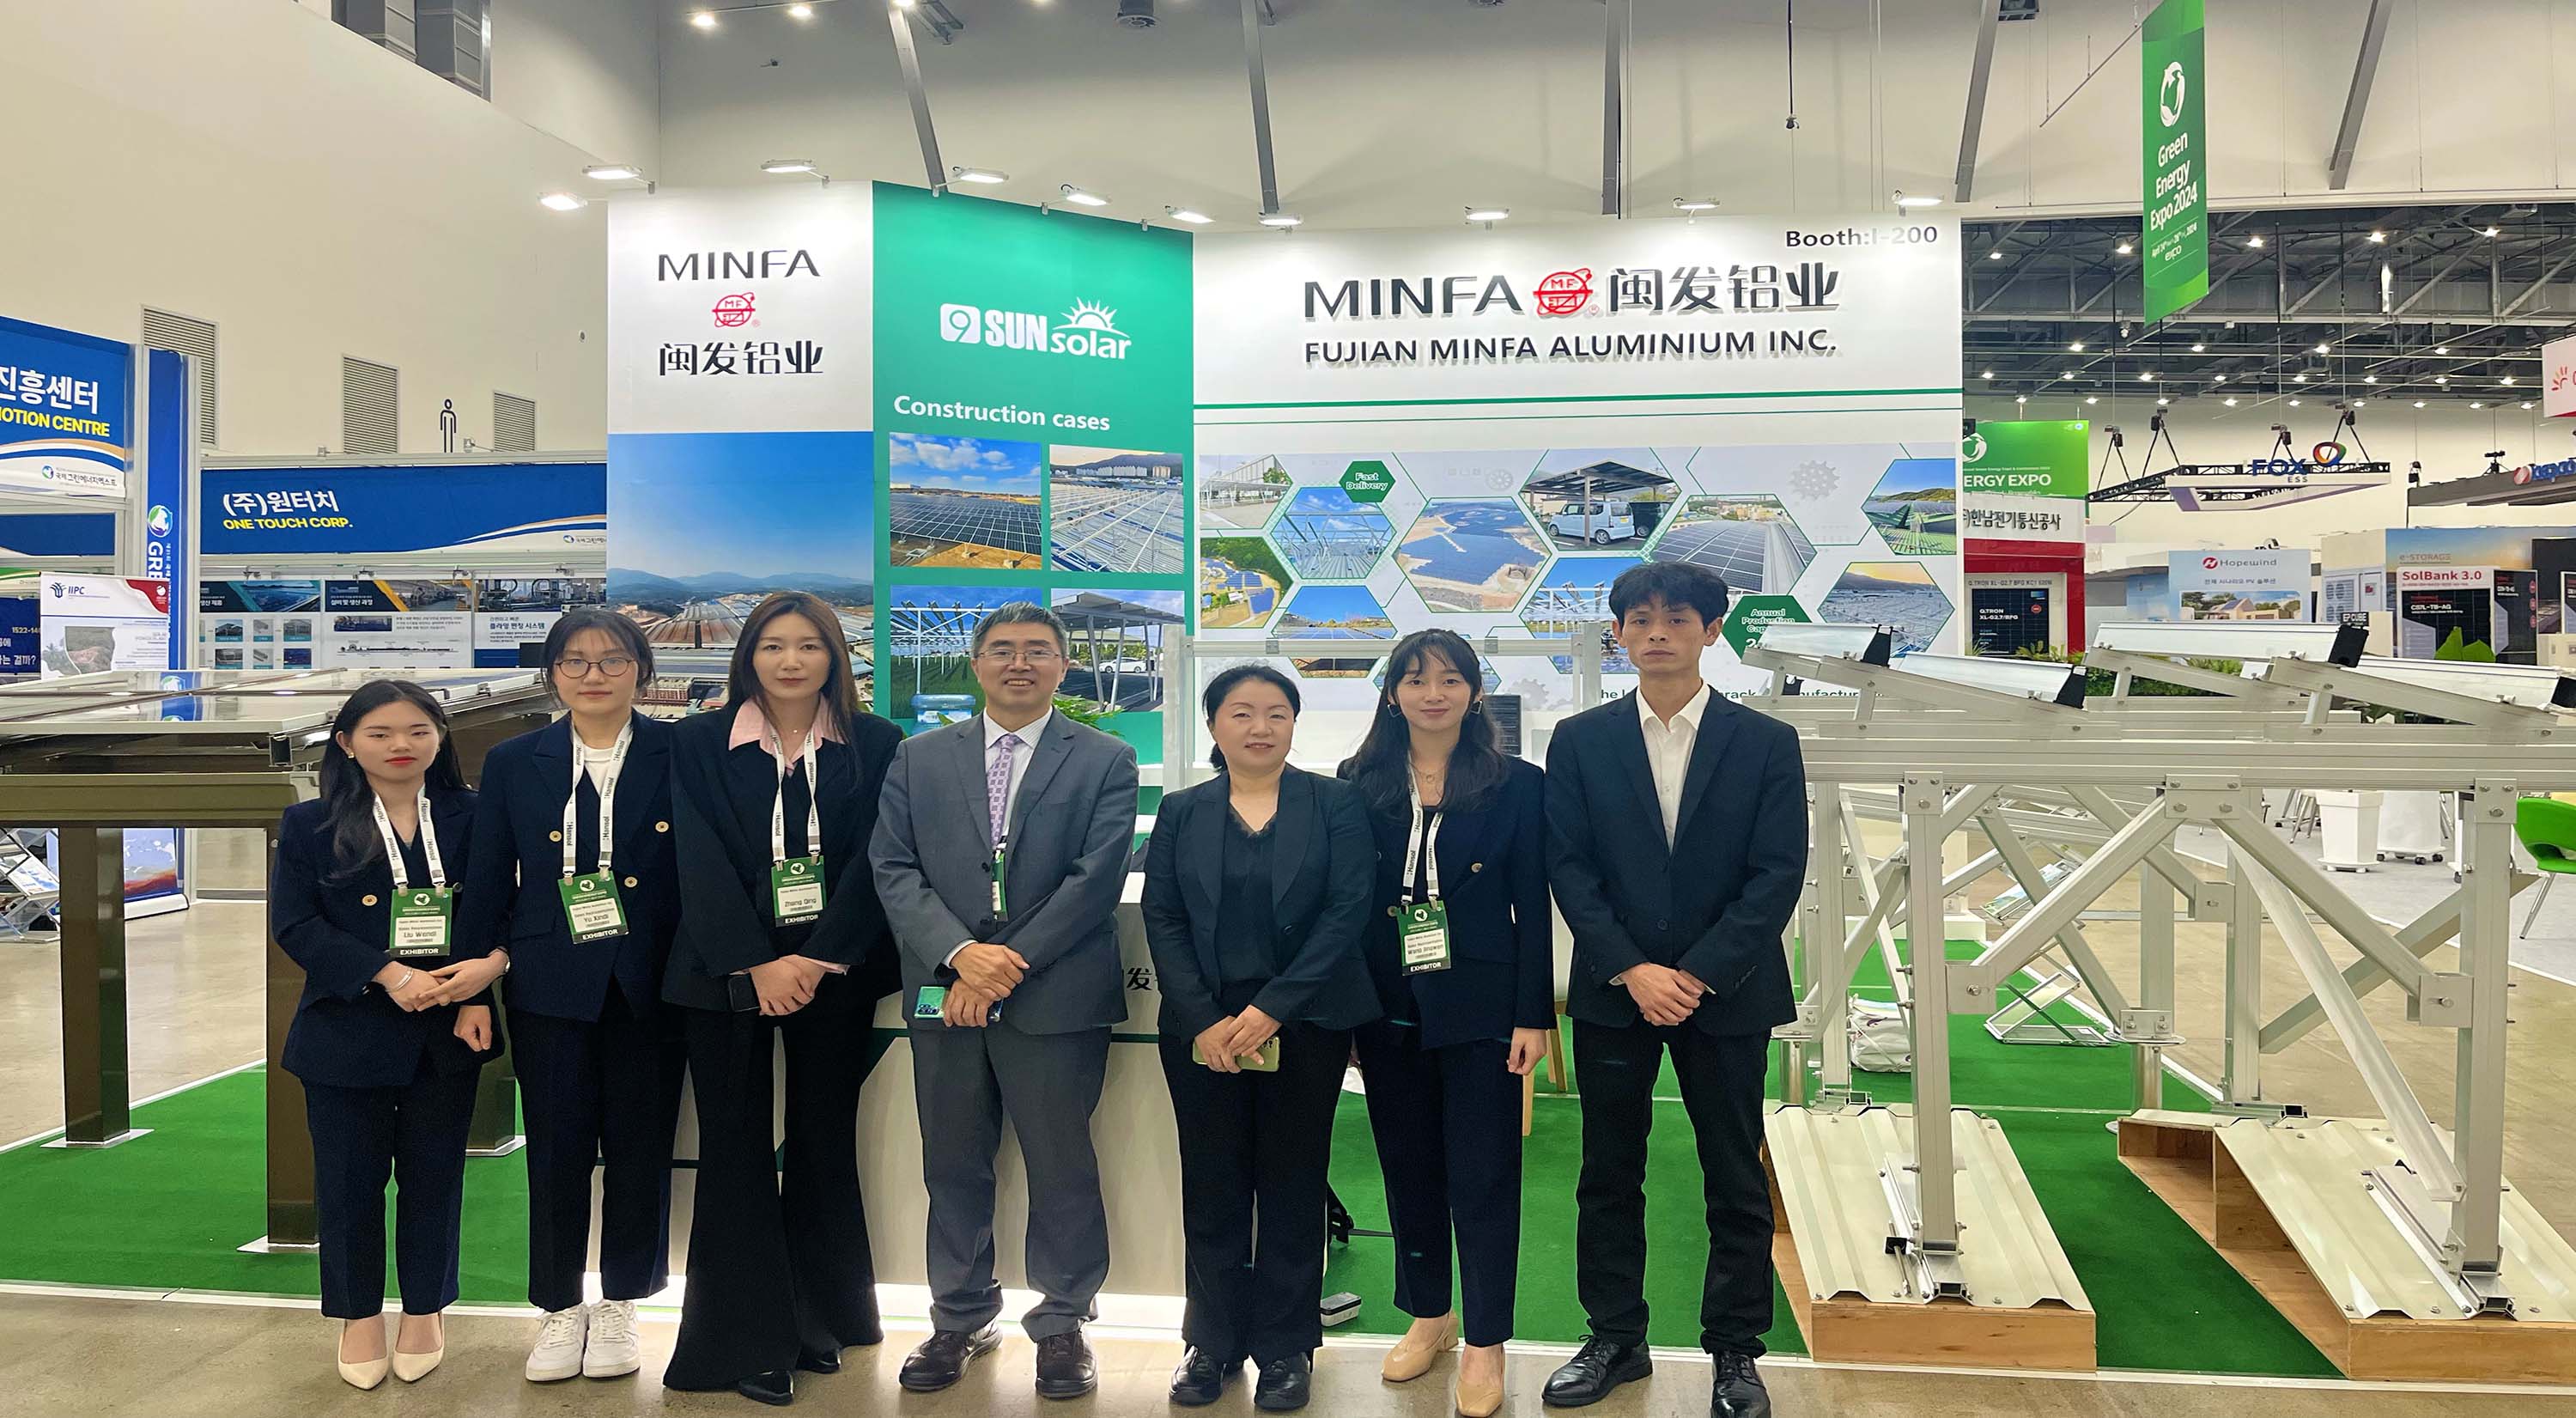 9Sun Solar espone allo stand I-200 alla 21a edizione dell'Expo internazionale sull'energia verde